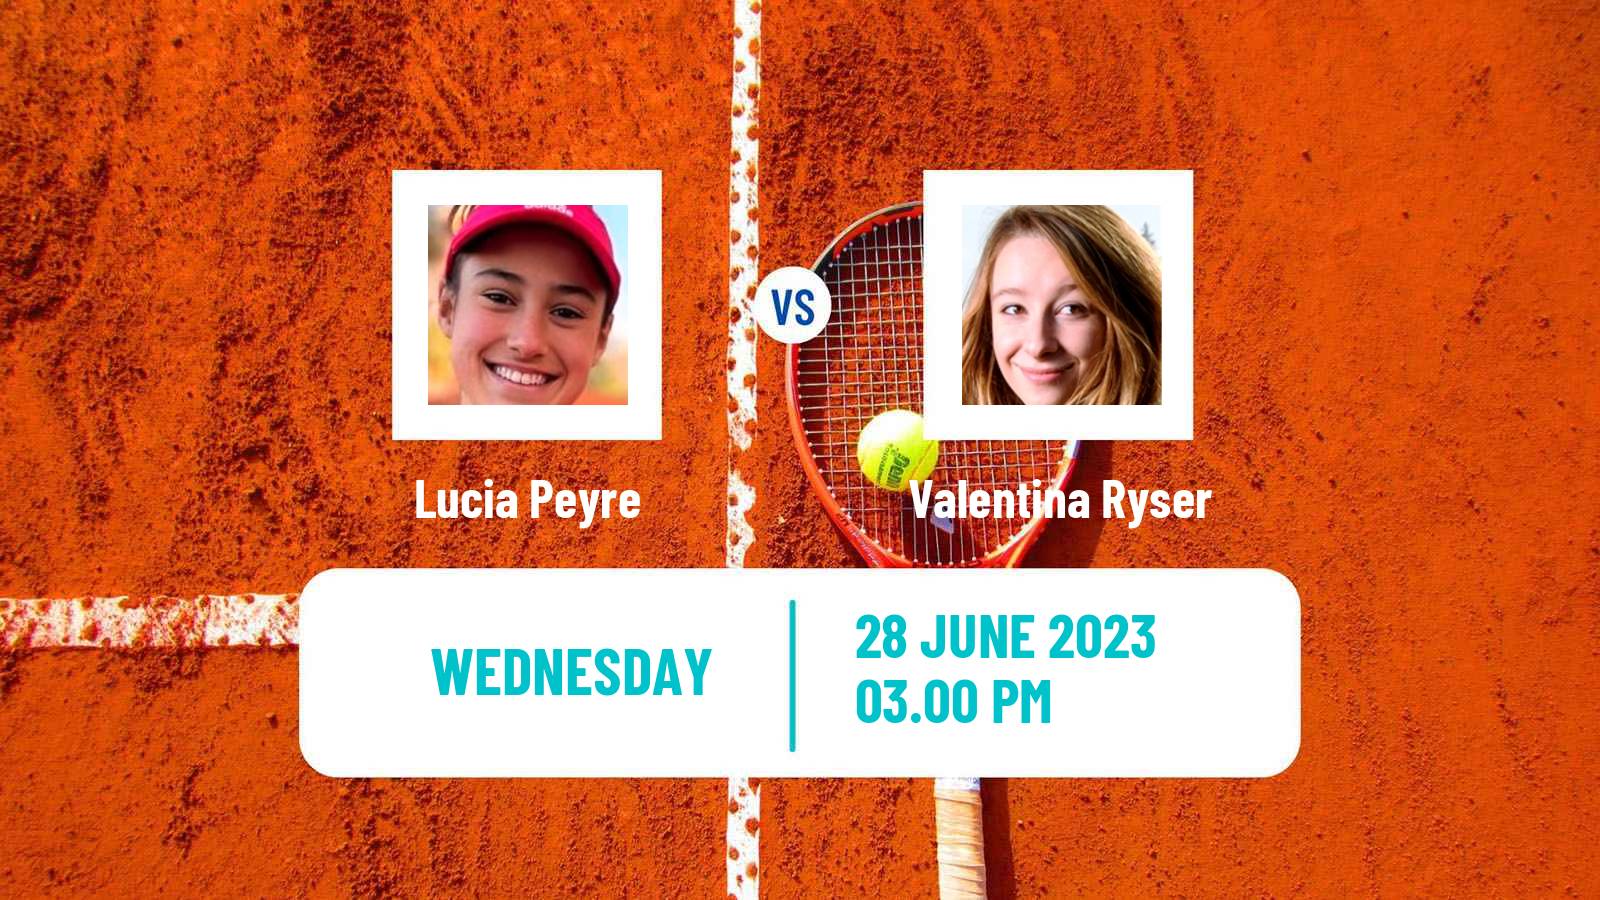 Tennis ITF W40 Palma Del Rio Women Lucia Peyre - Valentina Ryser